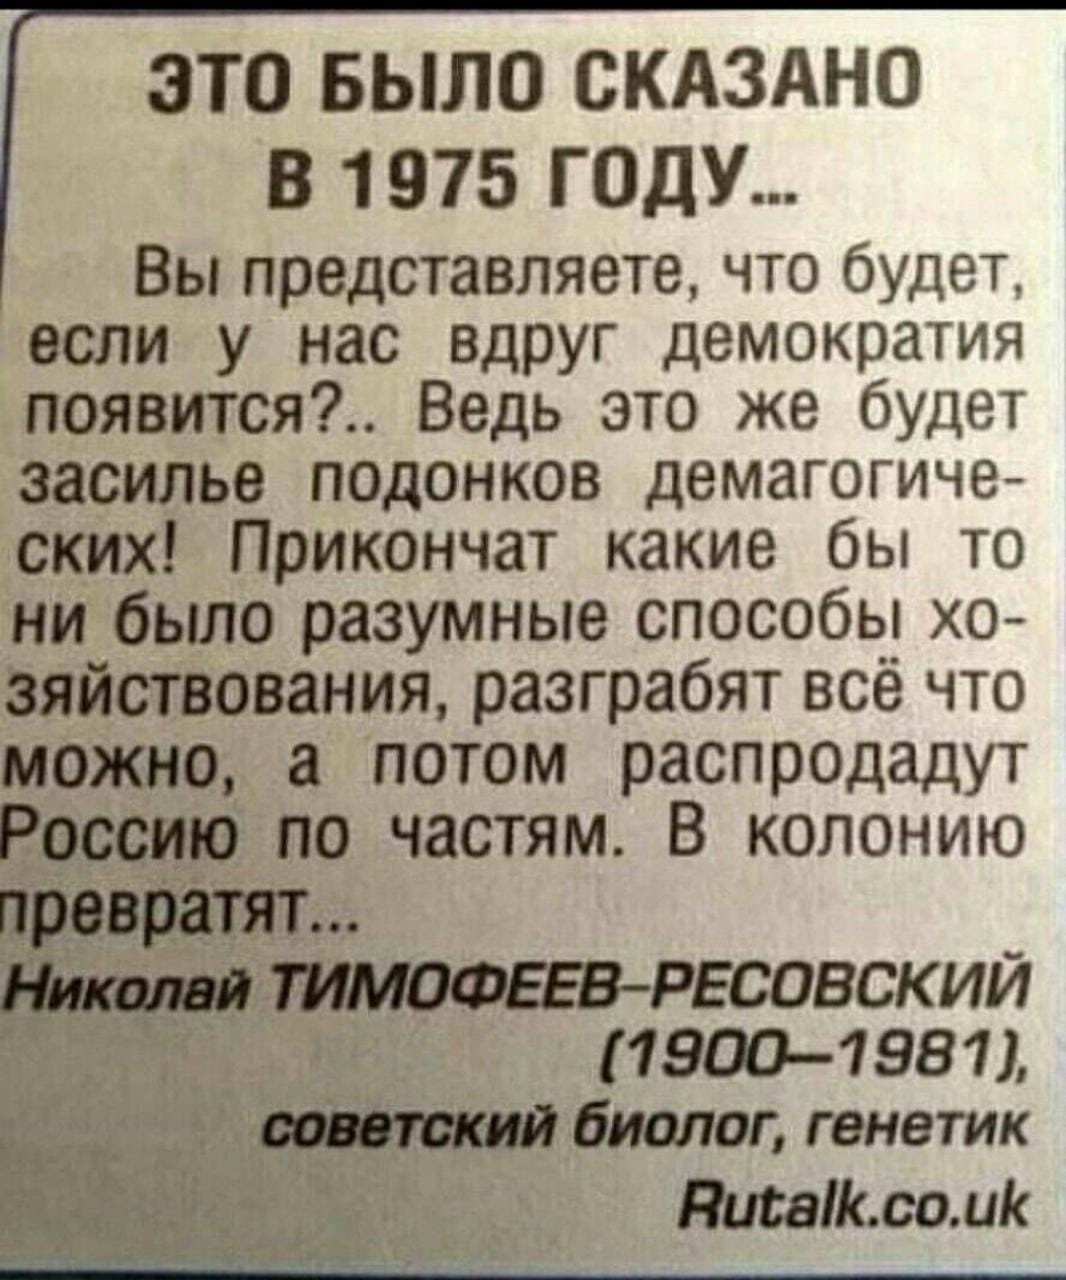 Как в воду глядел это. Это было сказано в 1975 году. Тимофеев-Ресовский о демократии. Это было сказано в 1975 году Тимофеев-Ресовский.